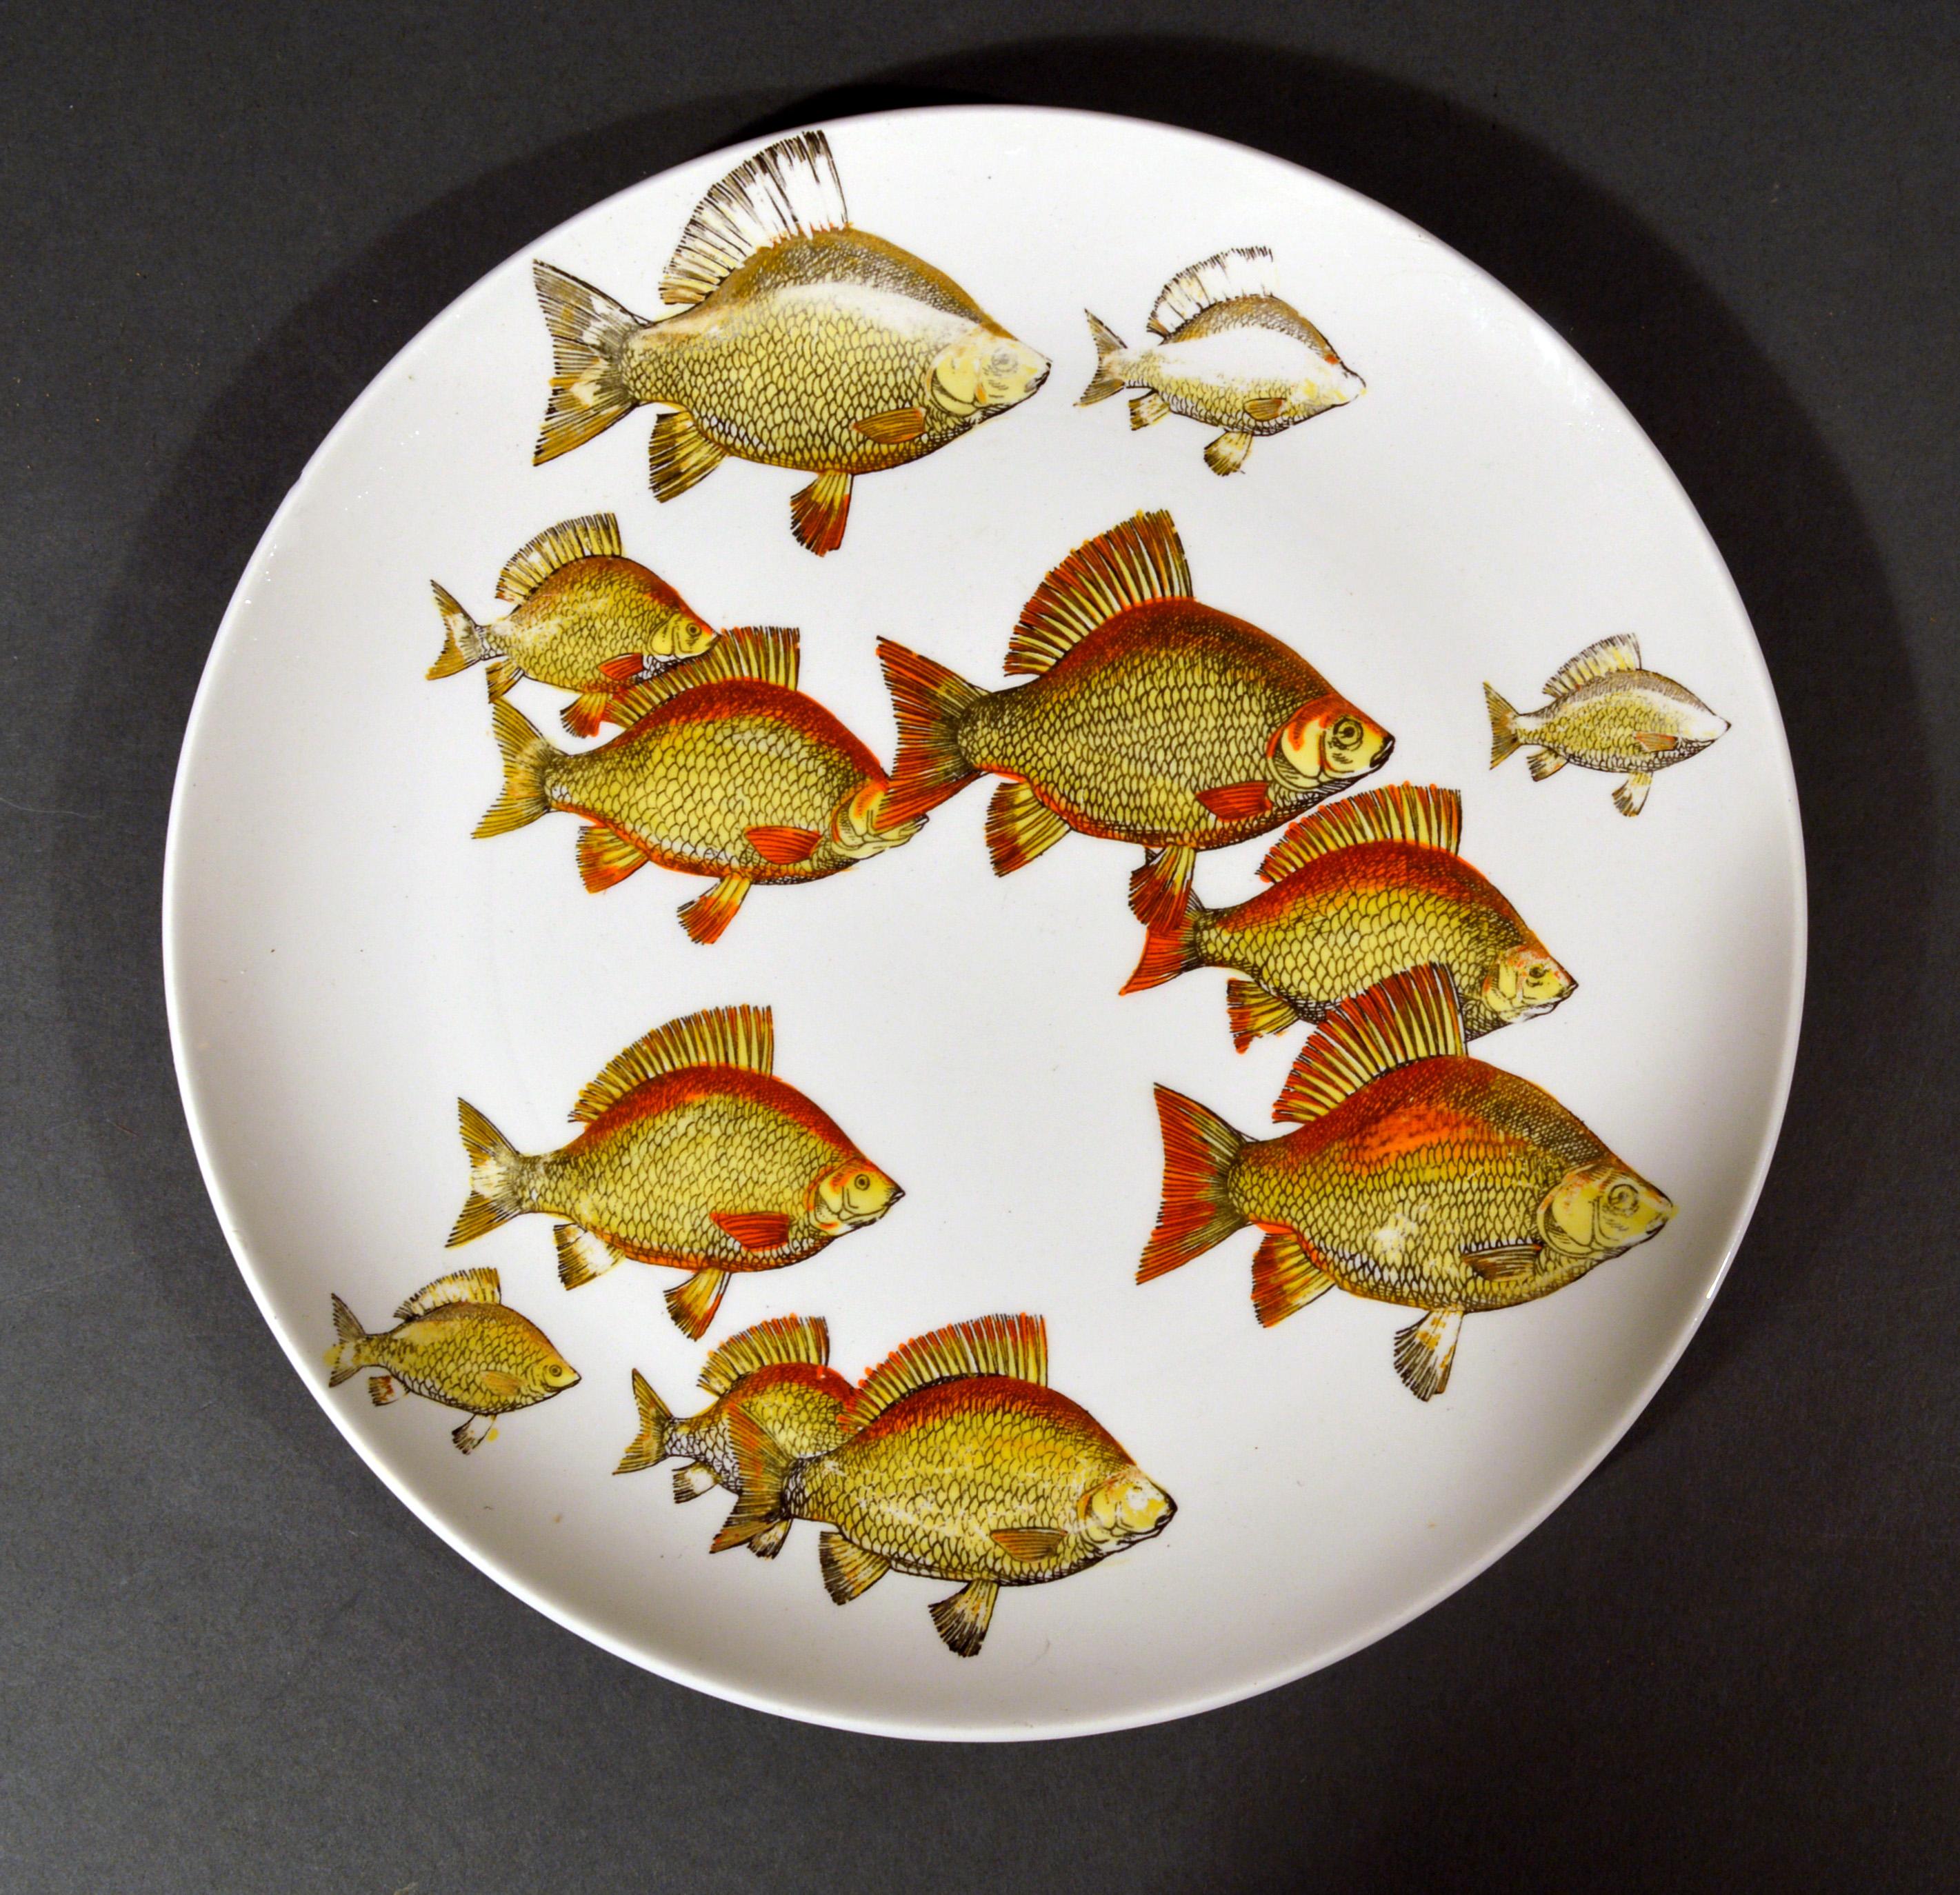 Paar seltene Fischteller von Piero Fornasetti,
Pesci-Muster oder Passage der Fische,
Nummeriert # 2 & 3,
ca. 1960er Jahre

Auf den Porzellantellern sind zwei verschiedene Fischschwärme abgebildet, die gemeinsam über den Teller schwimmen. 

Jedes